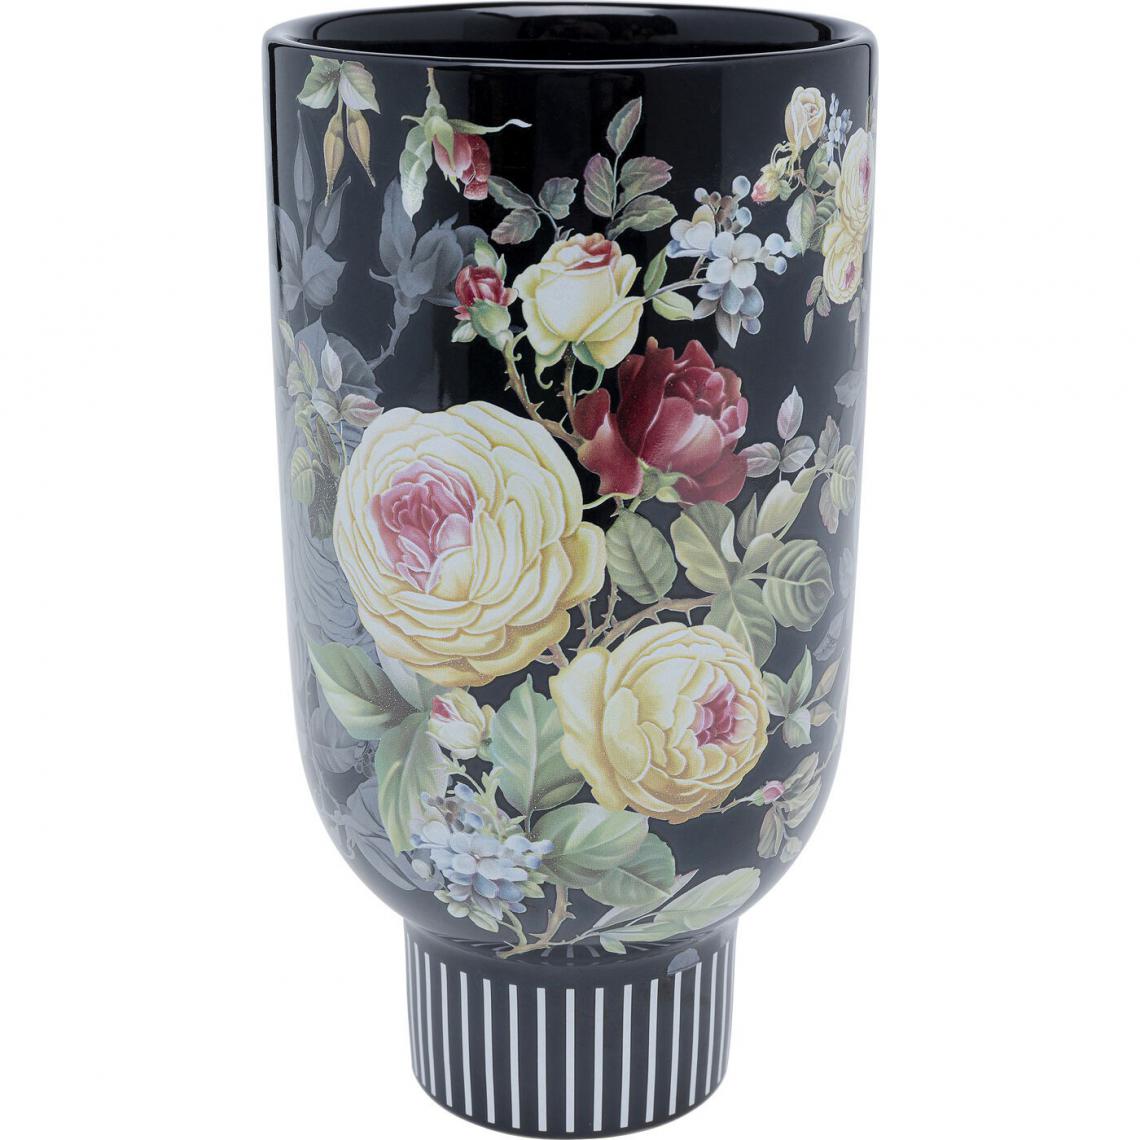 Karedesign - Vase fleurs 27cm noir Kare Design - Vases